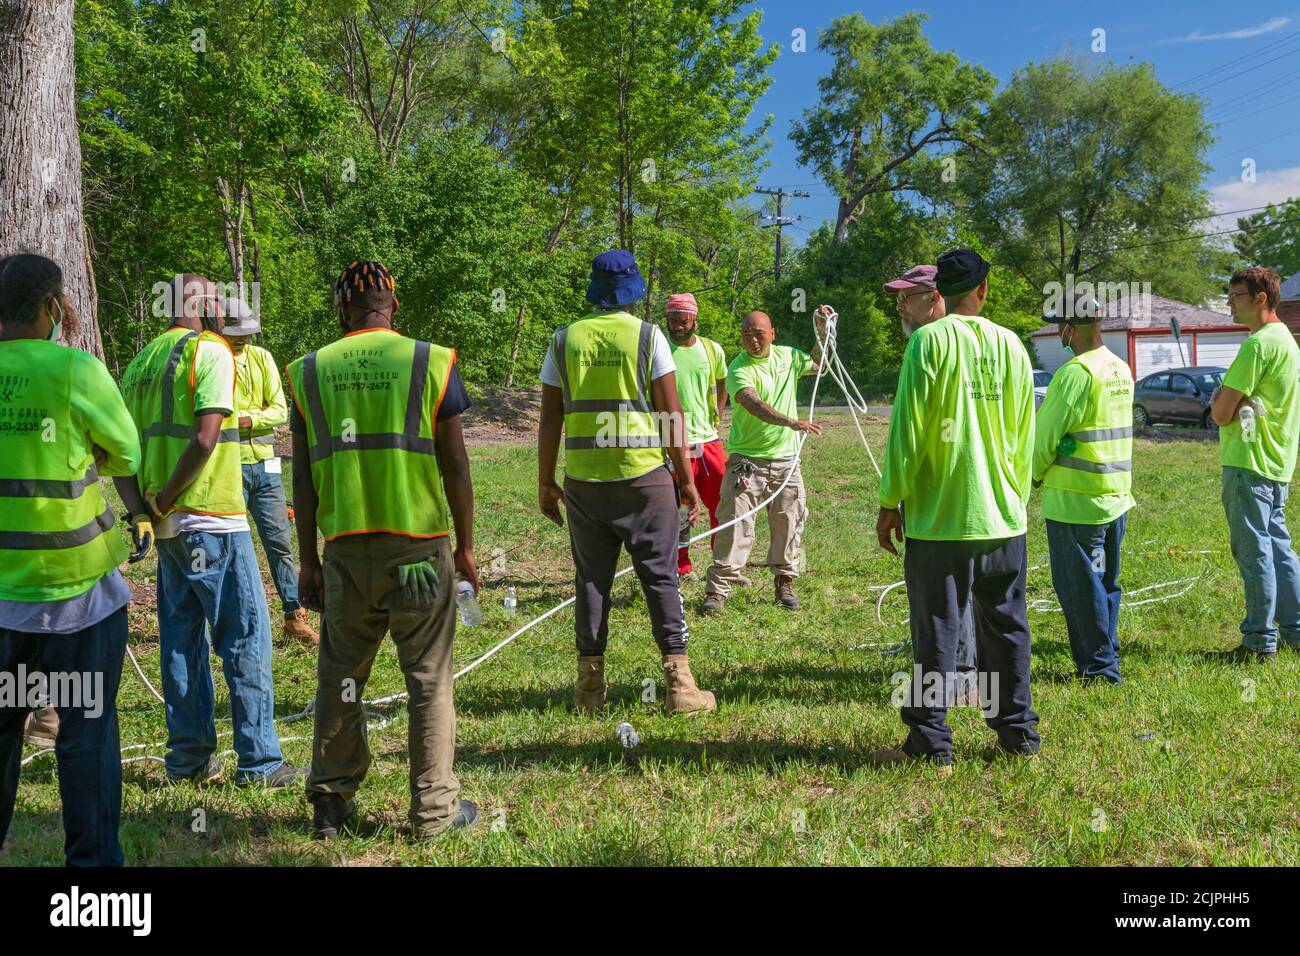 Detroit, Michigan - i lavoratori del Detroit Grounds Crew imparano a usare le corde di cui avranno bisogno per abbattere alberi morti o indesiderati. Foto Stock